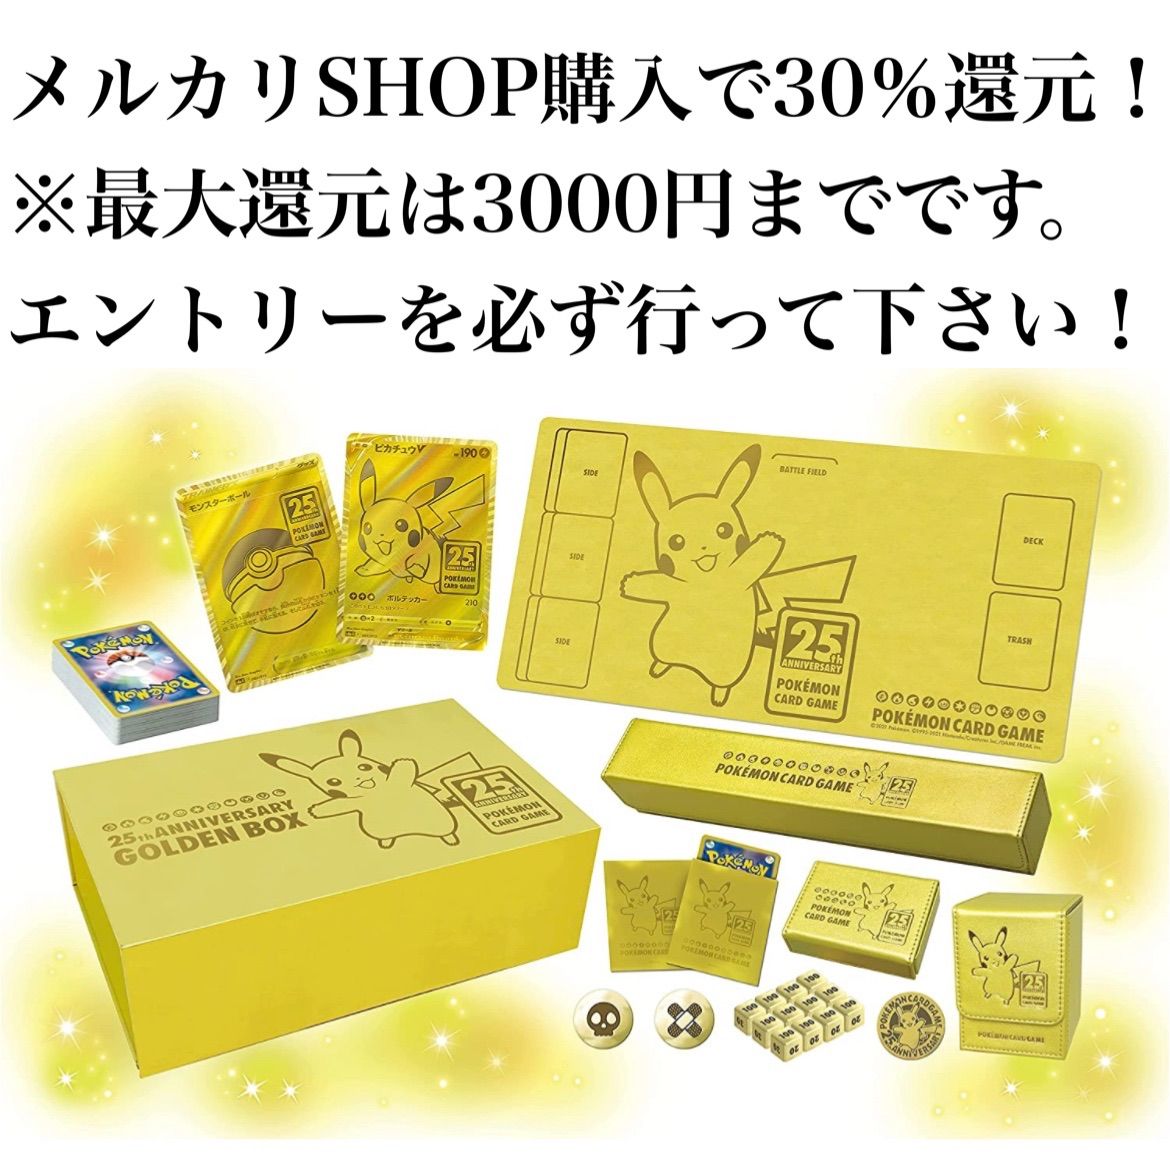 ポケモンカードゲーム 25th GOLDEN BOX - ミスレニショップ